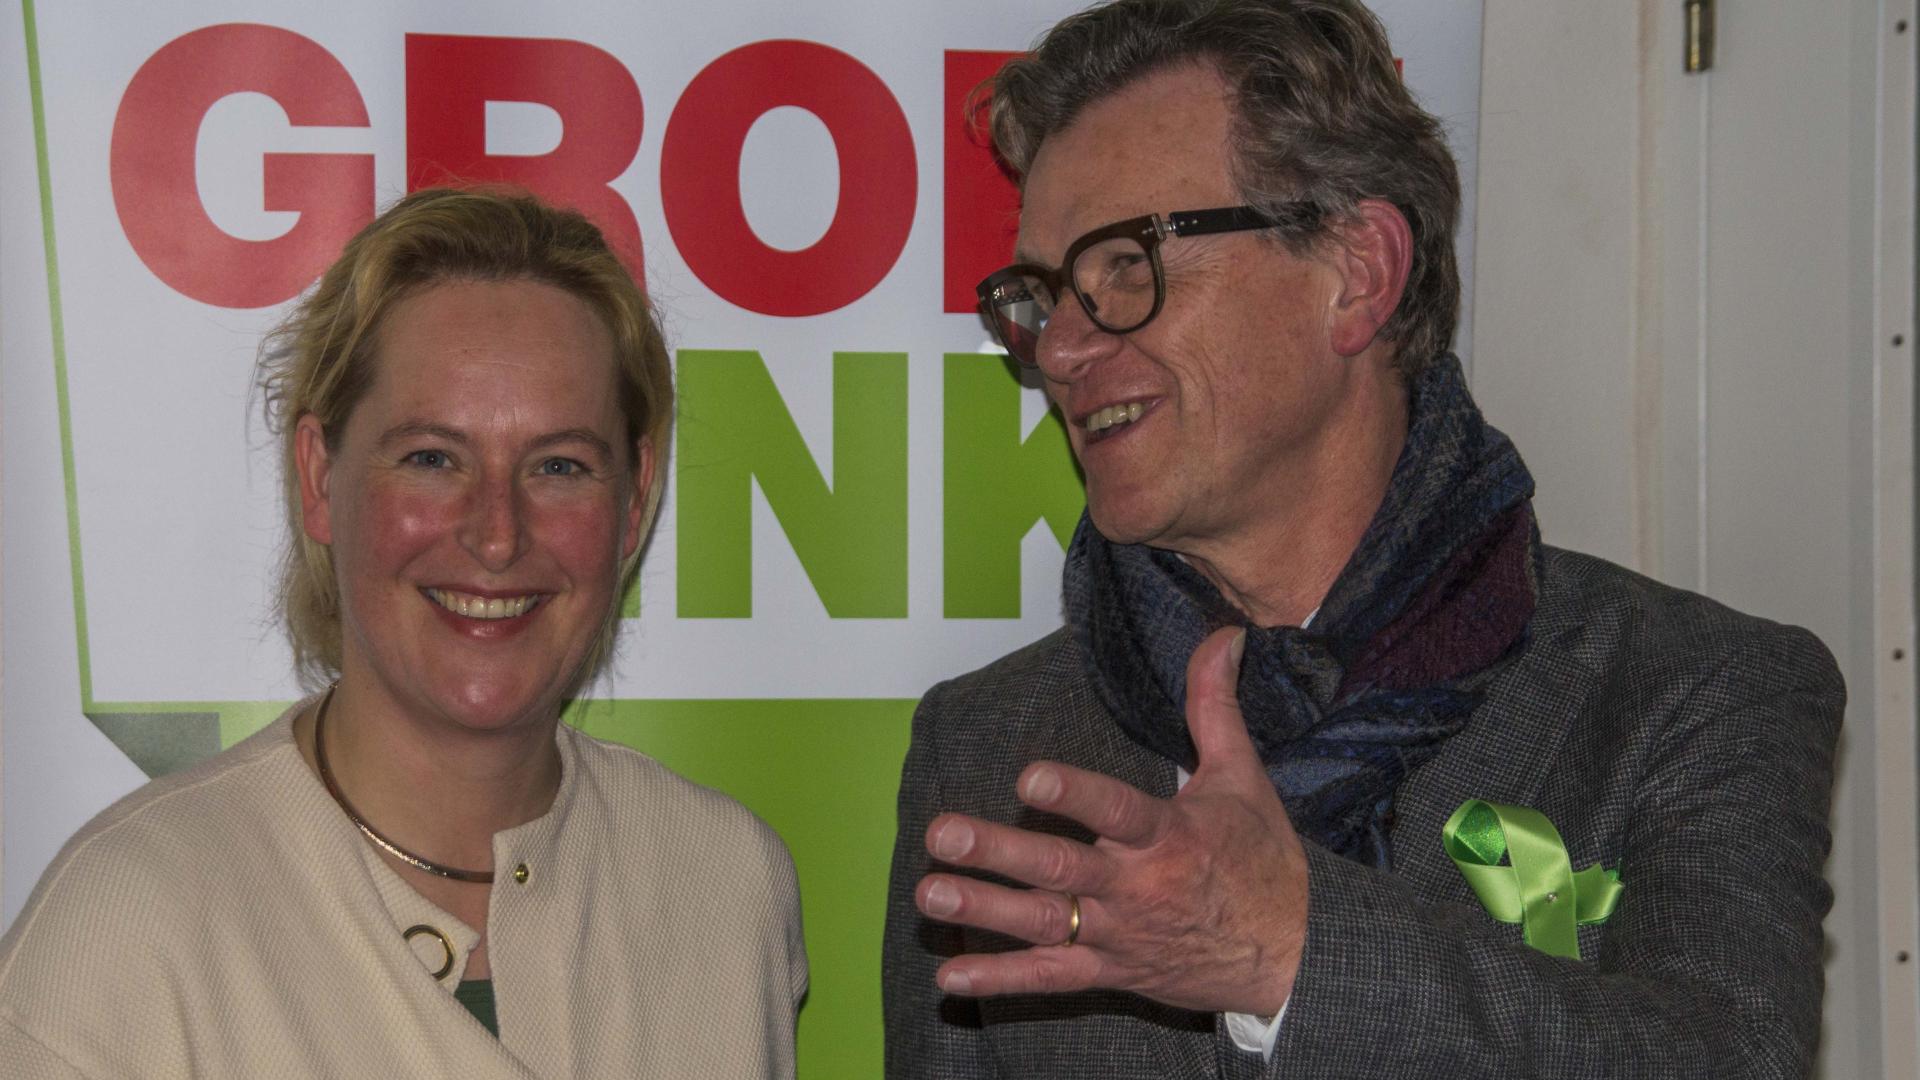 Hagar Roijackers lijsttrekker GroenLinks Noord-Brabant en Jan Schouw na opspelden Groene Lintje